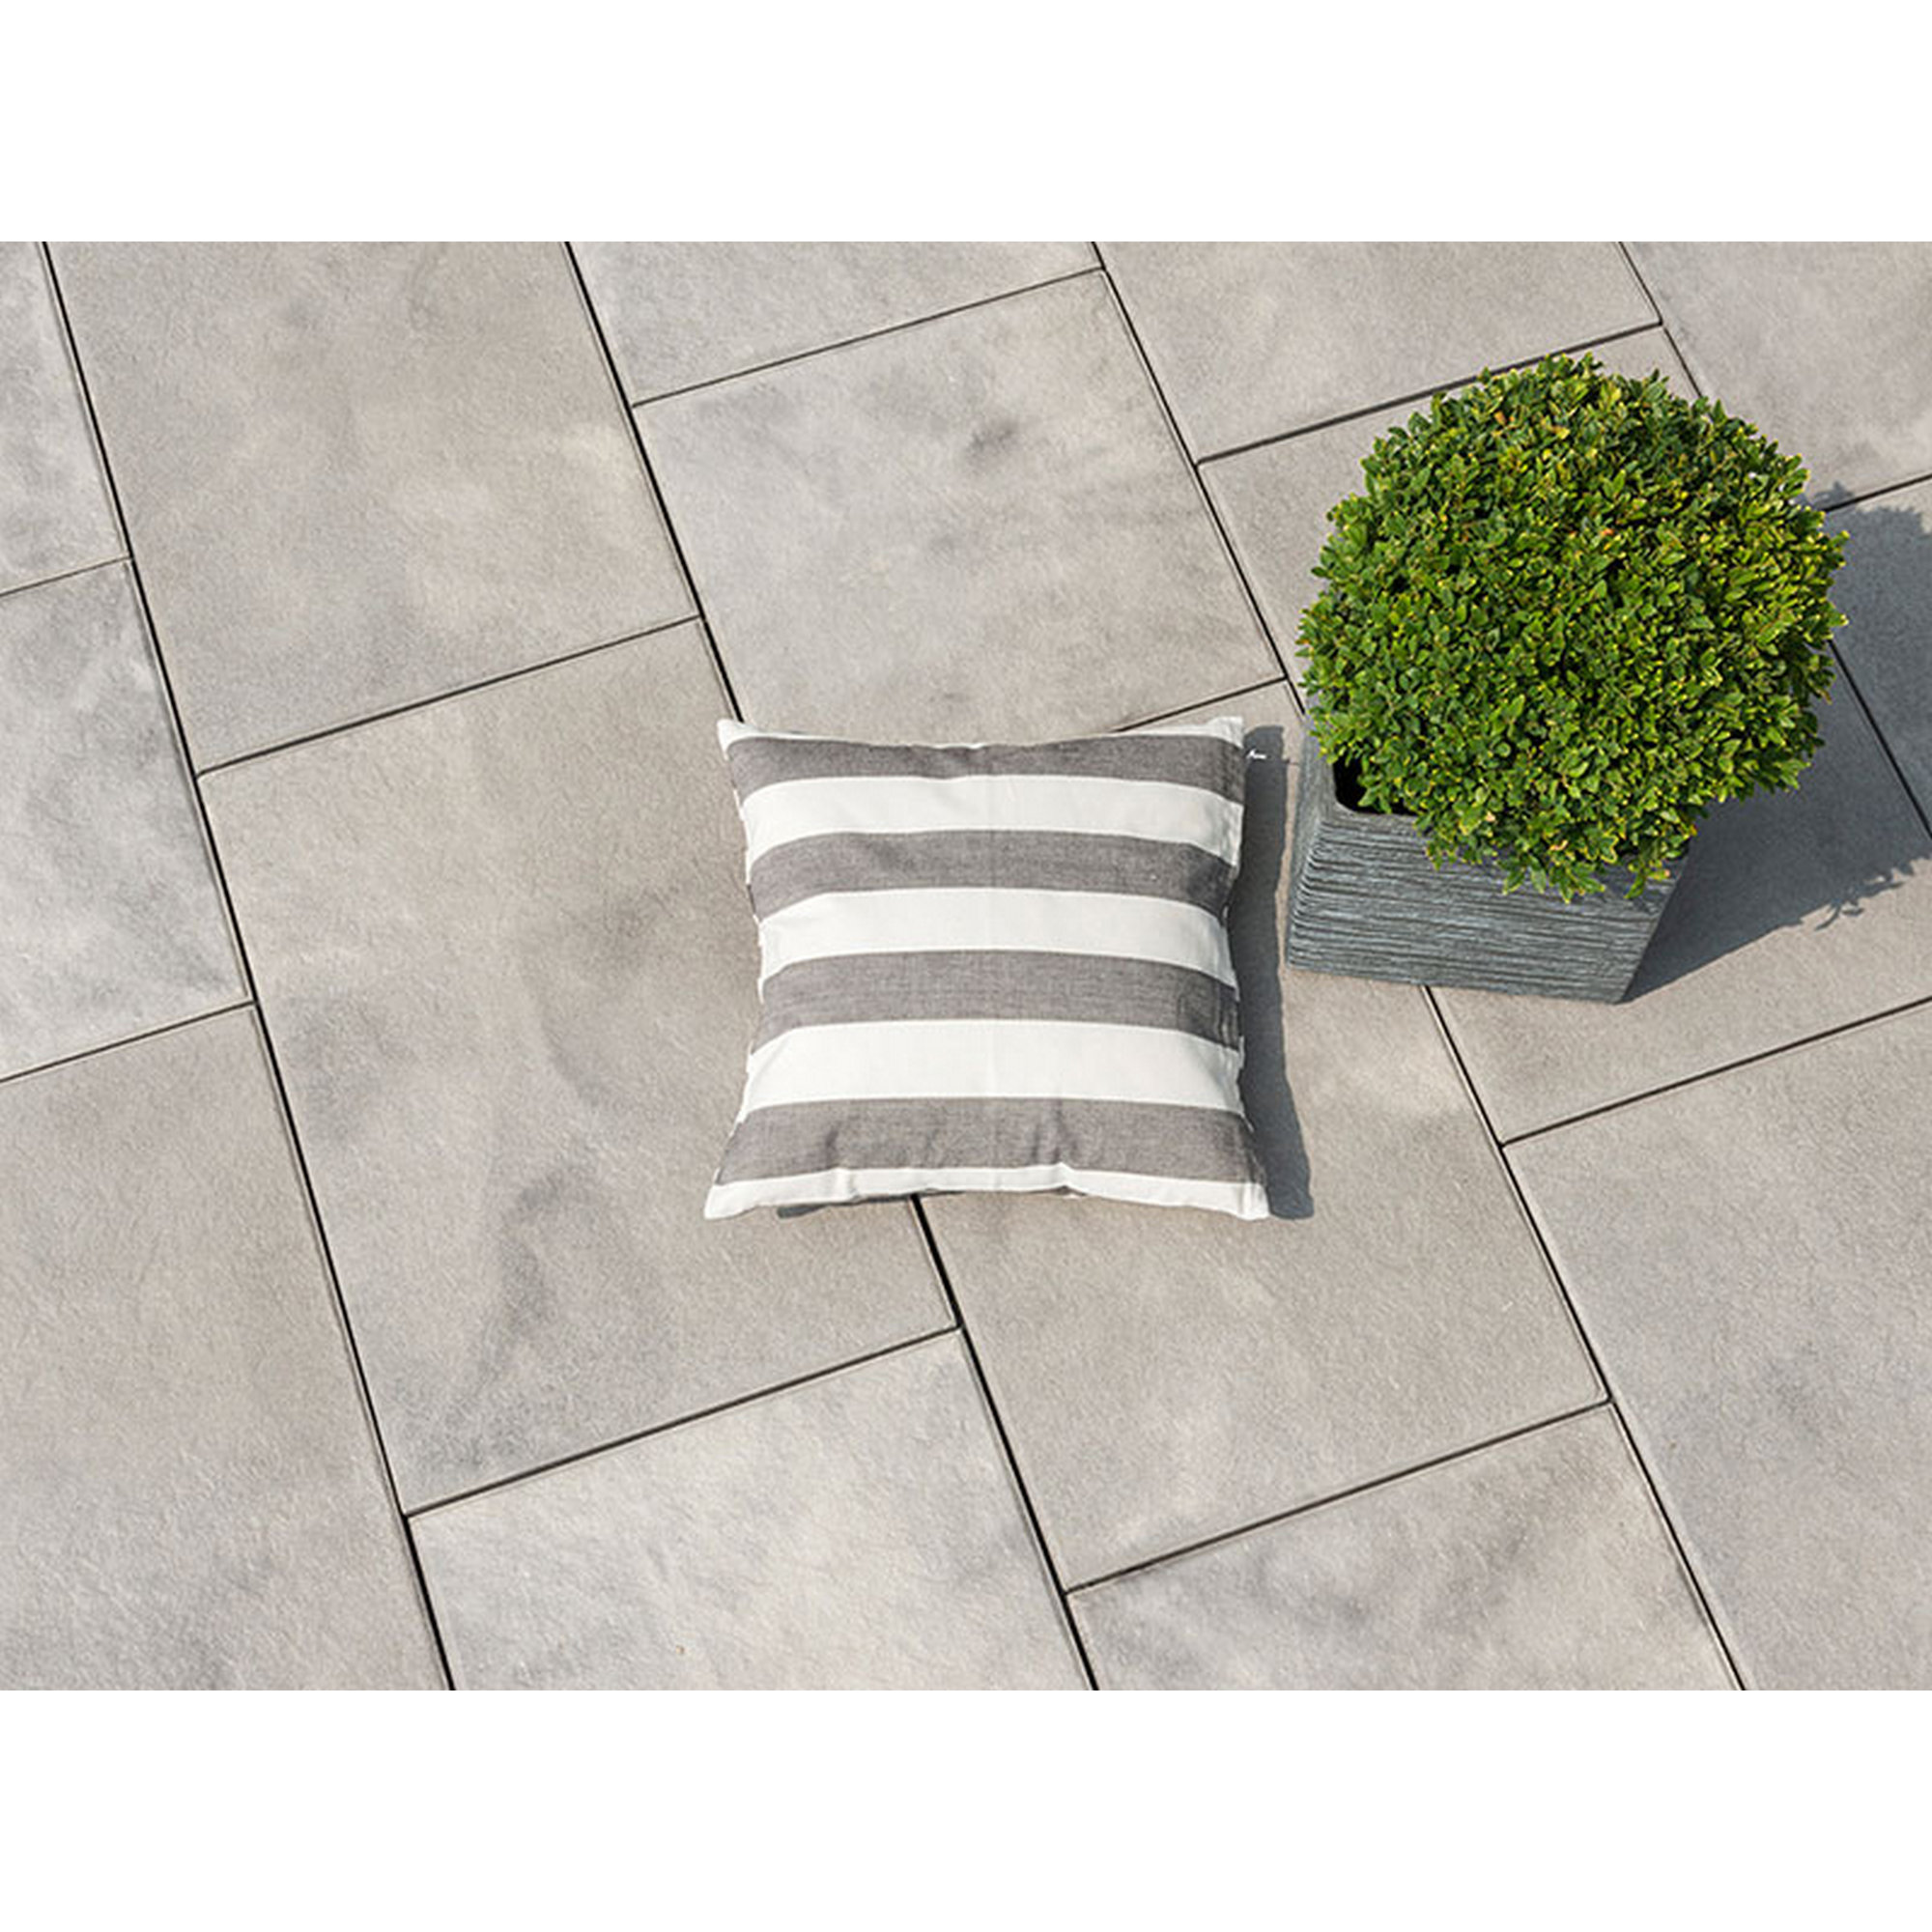 Terrassenplatte T-Court 'Noble' Beton schwarz-weiß 60 x 40 x 4 cm + product picture